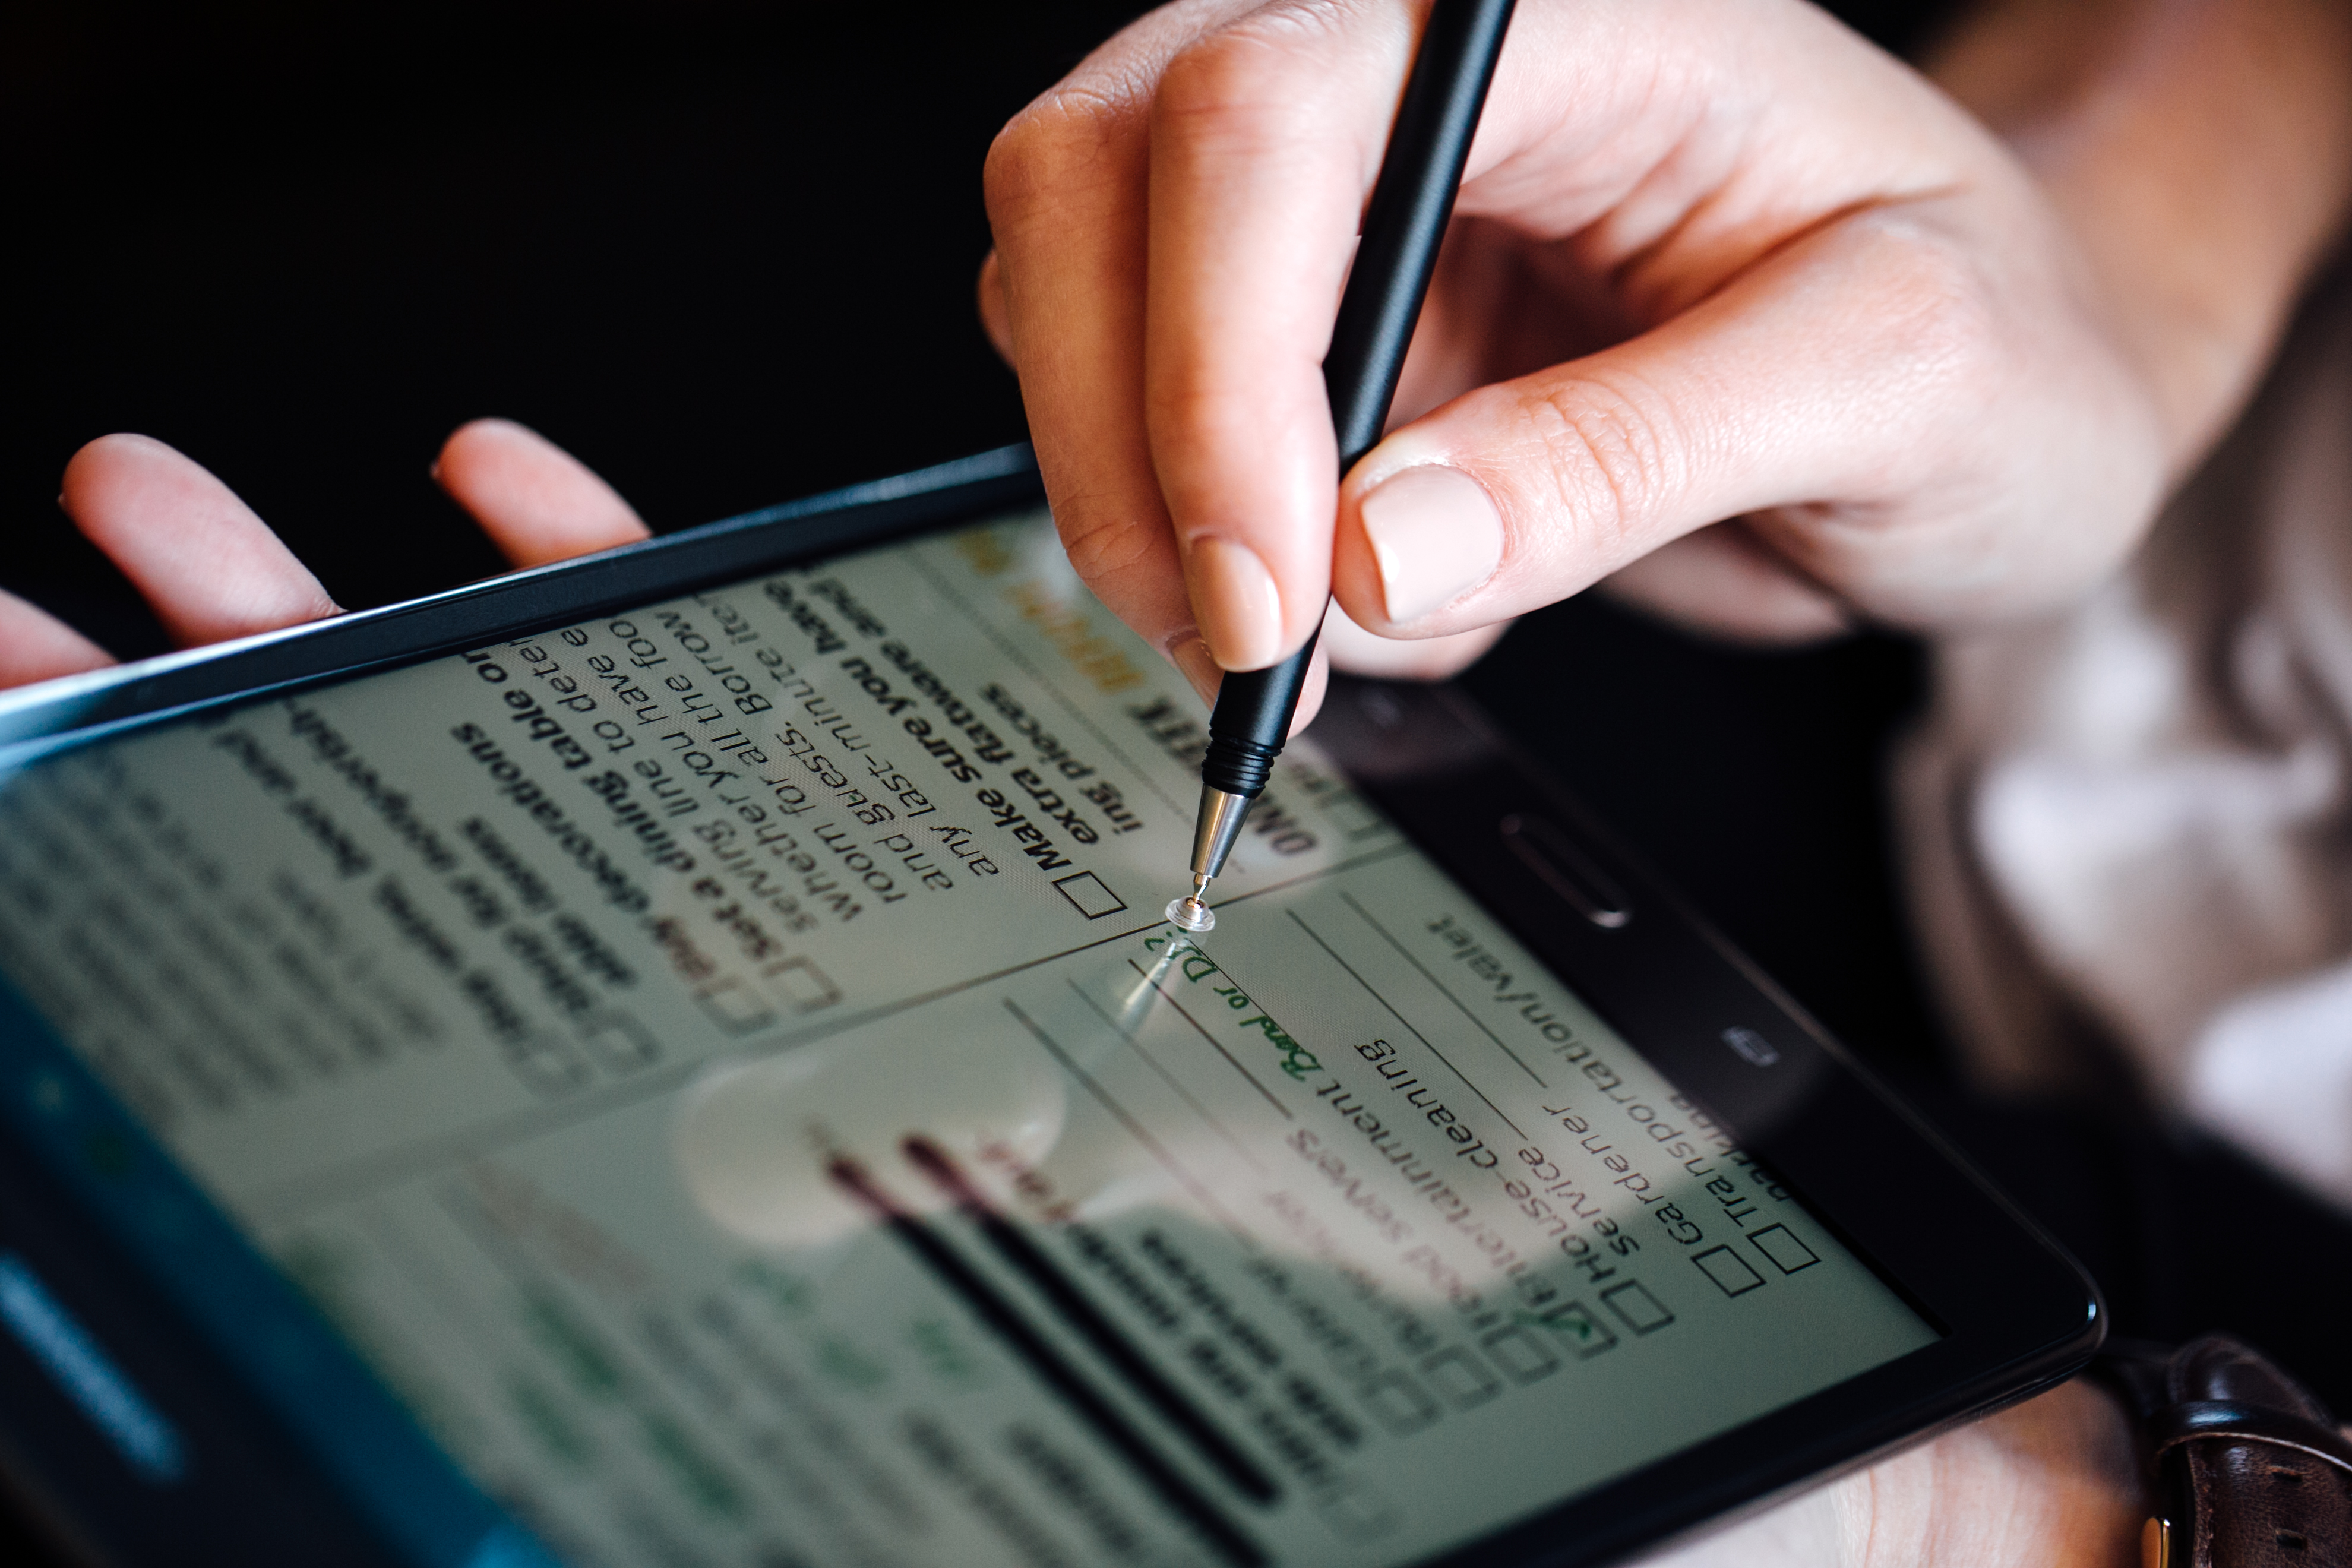 Der Adonit Droid - Stylus - Pen - für Android Smartphones und Tablet Computer bietet natürliches Schreiben wie mit einem herkömmlichen Stift 03